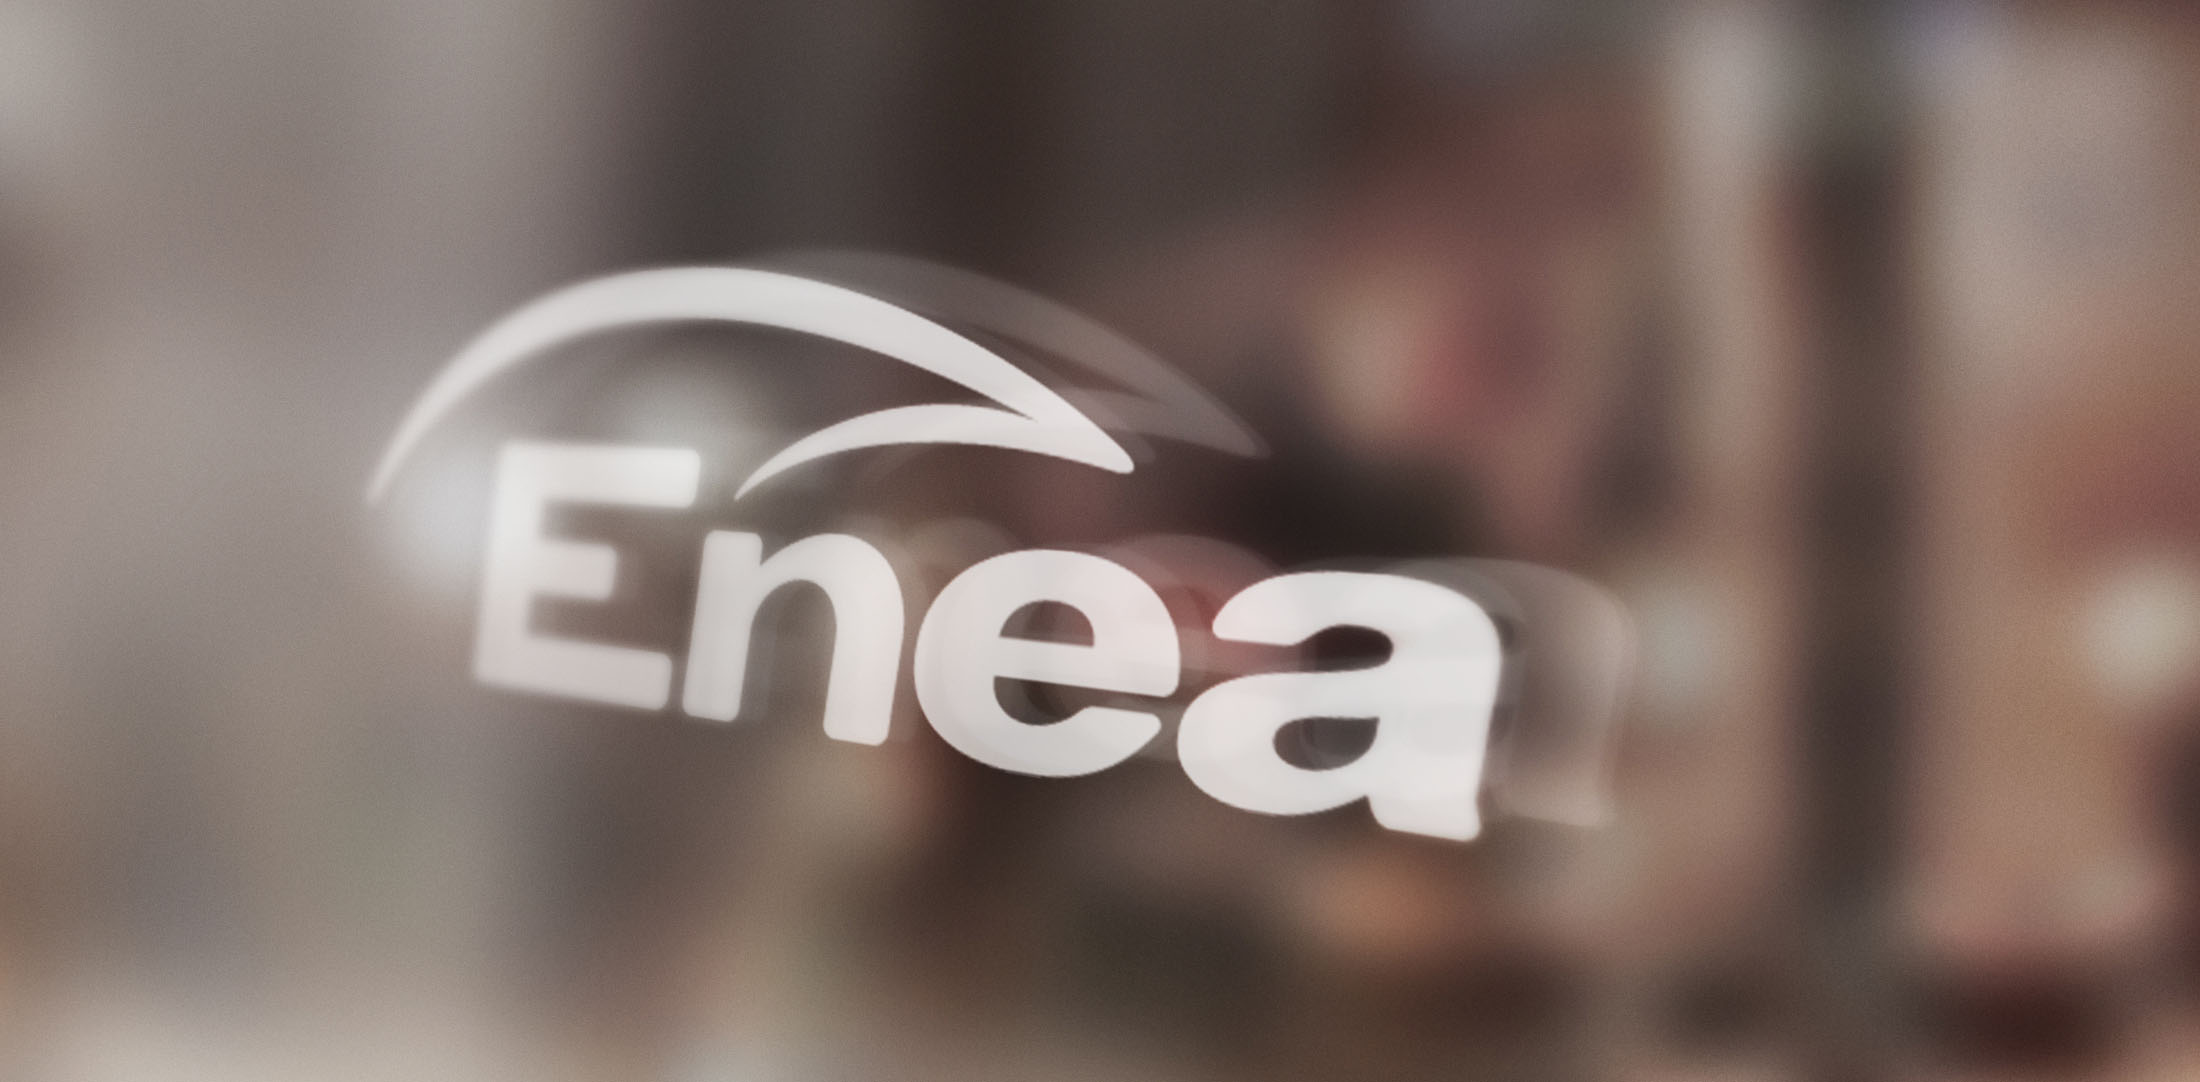 Read more about the article ENEA: odpis wartości aktywów wiatrowych na 49 mln zł.